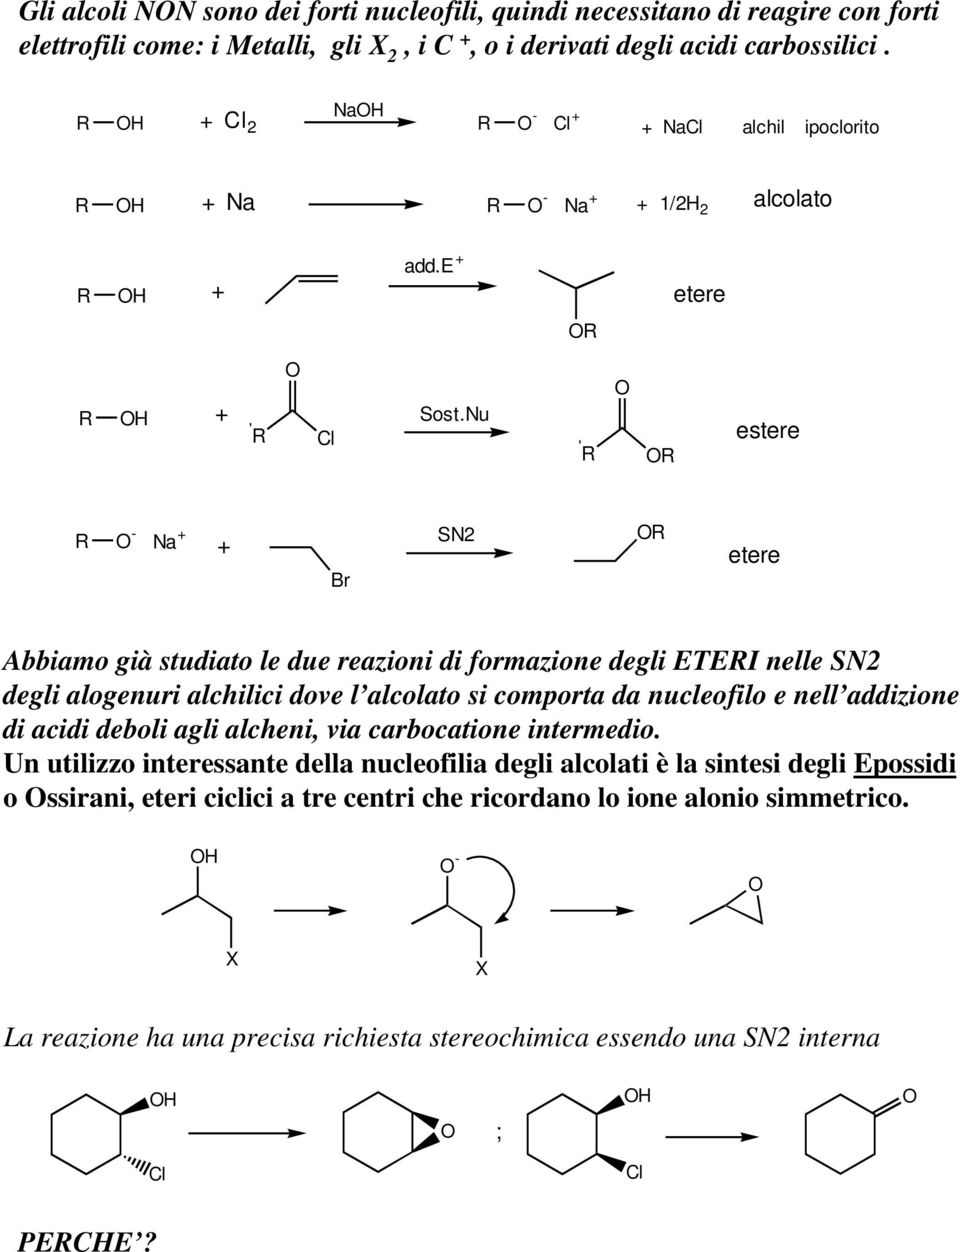 nu ' estere - Na + + N2 etere Abbiamo già studiato le due reazioni di formazione degli ETEI nelle N2 degli alogenuri alchilici dove l alcolato si comporta da nucleofilo e nell addizione di